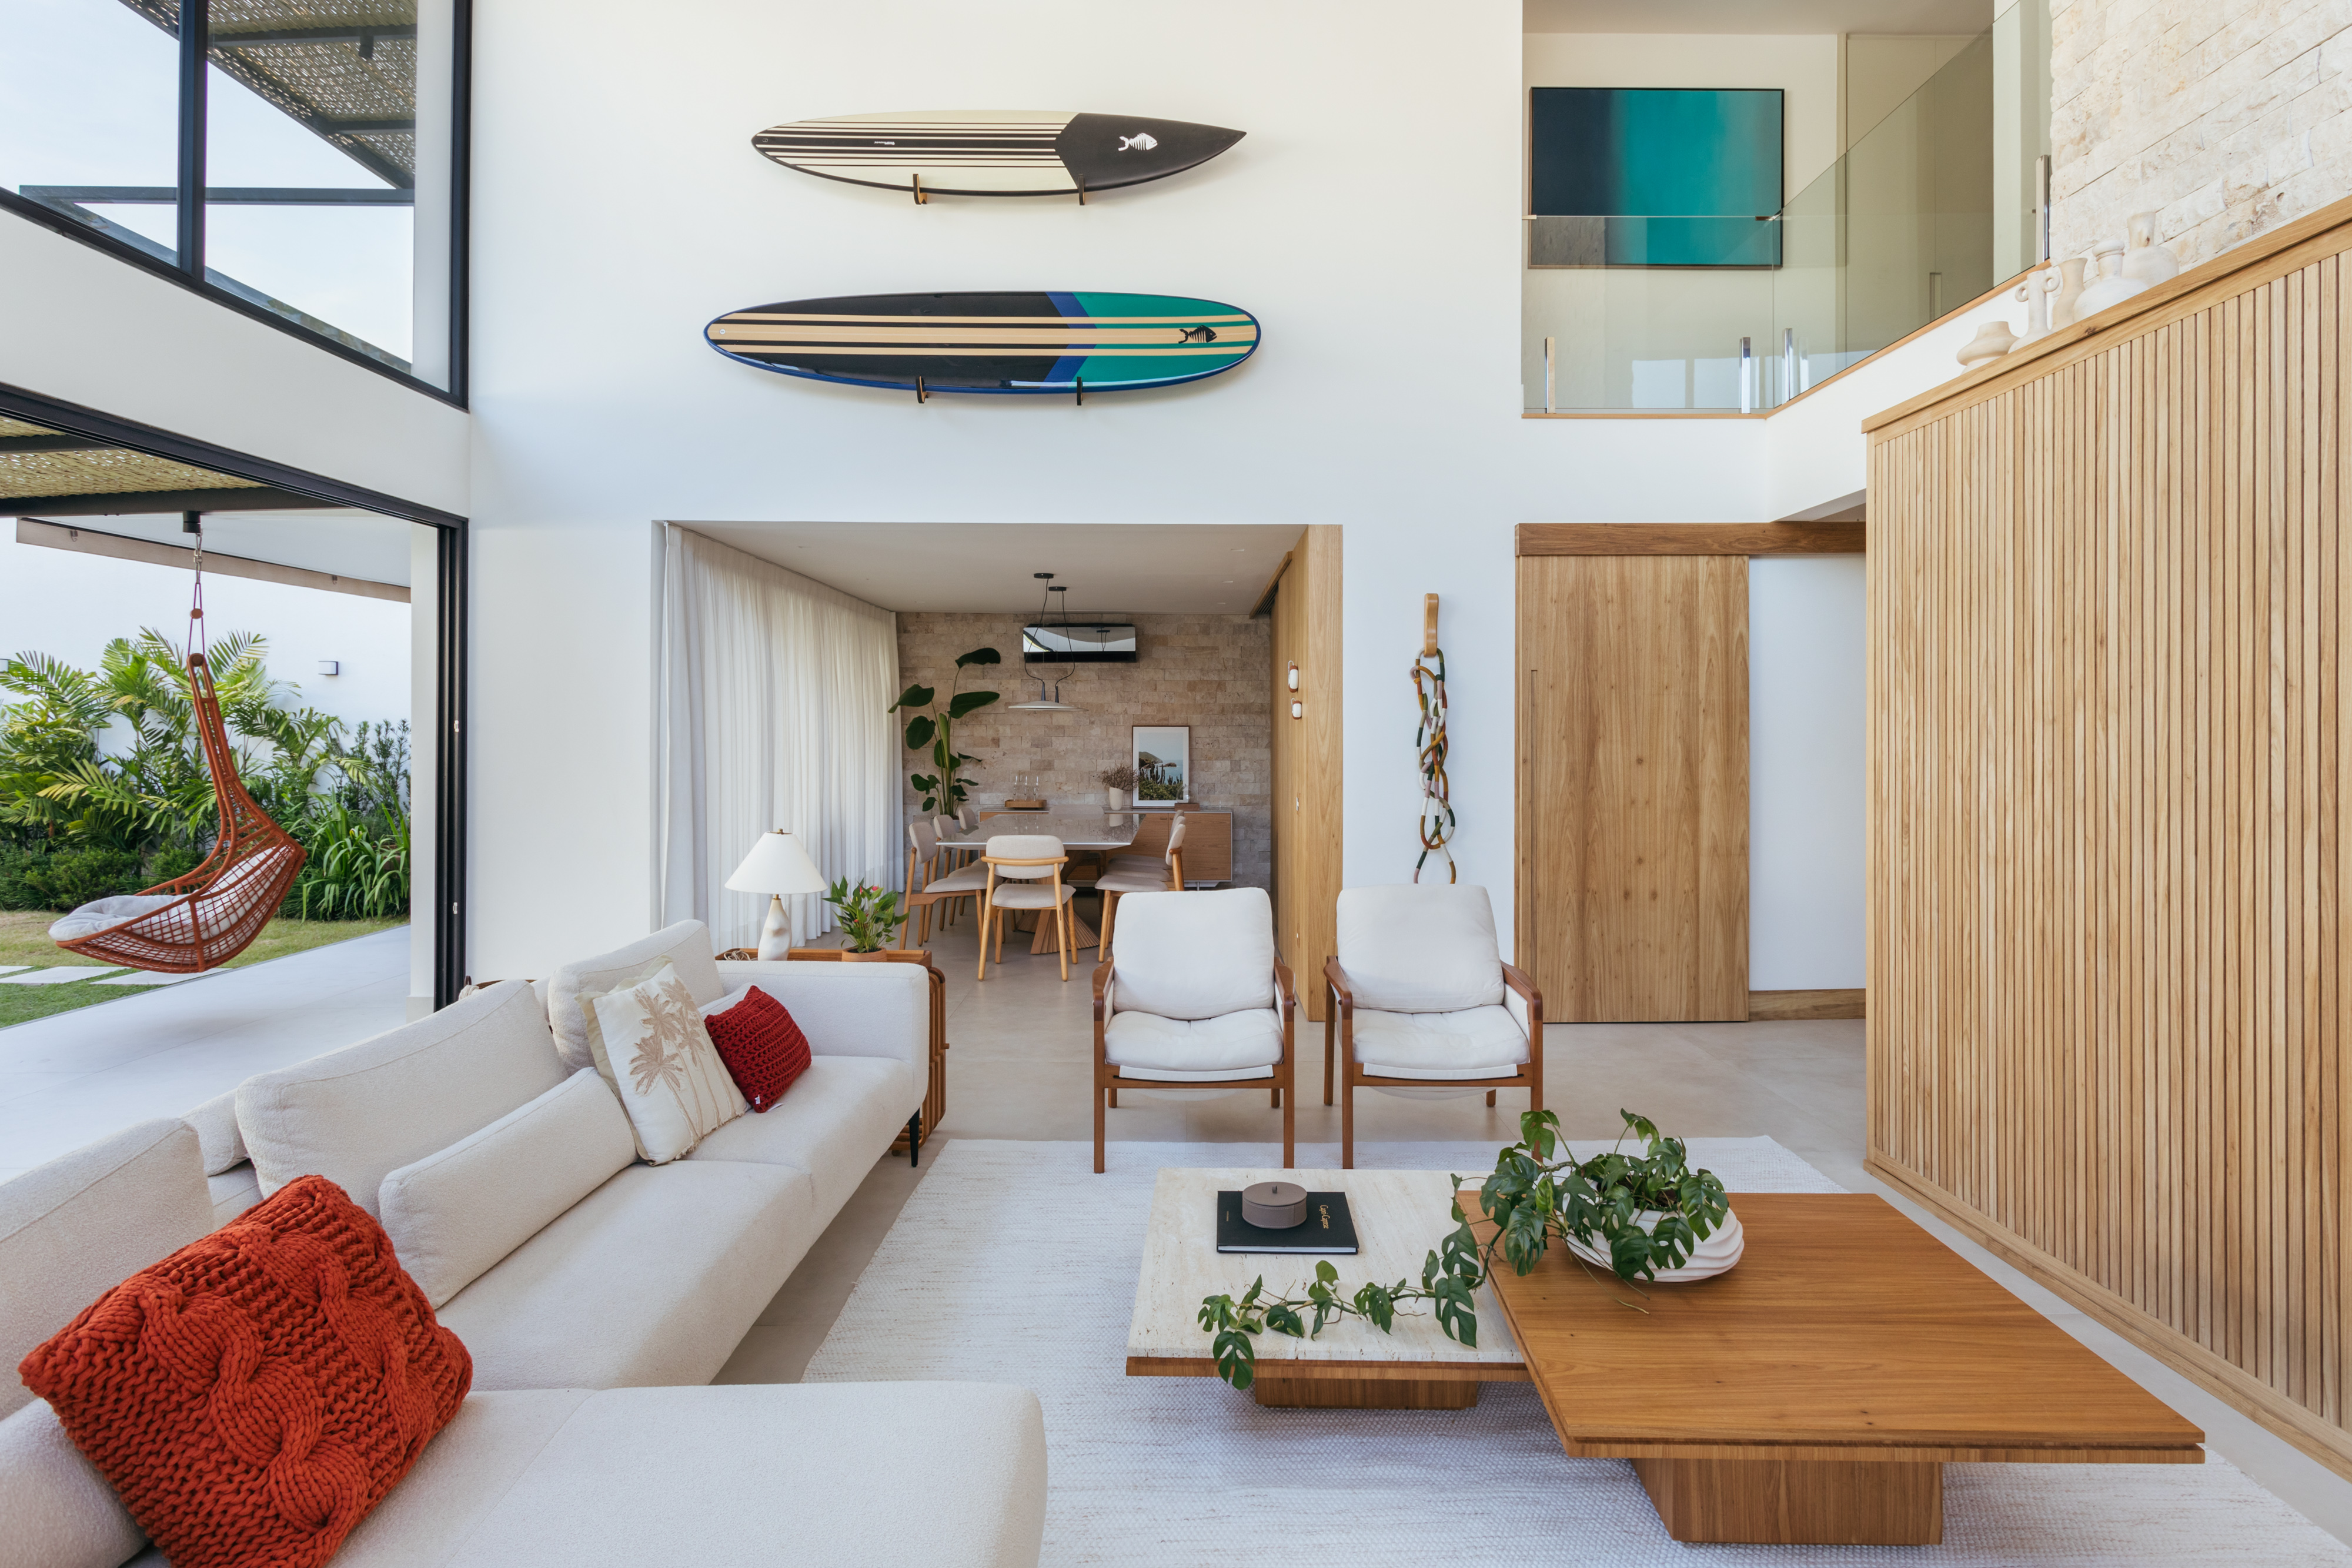 Pergolados com forro em fibras de bambu trançadas envolvem casa de 195 m². Projeto de Amanda Miranda. Na foto, sala de estar com pé-direito duplo, pranchas de surfe na parede.